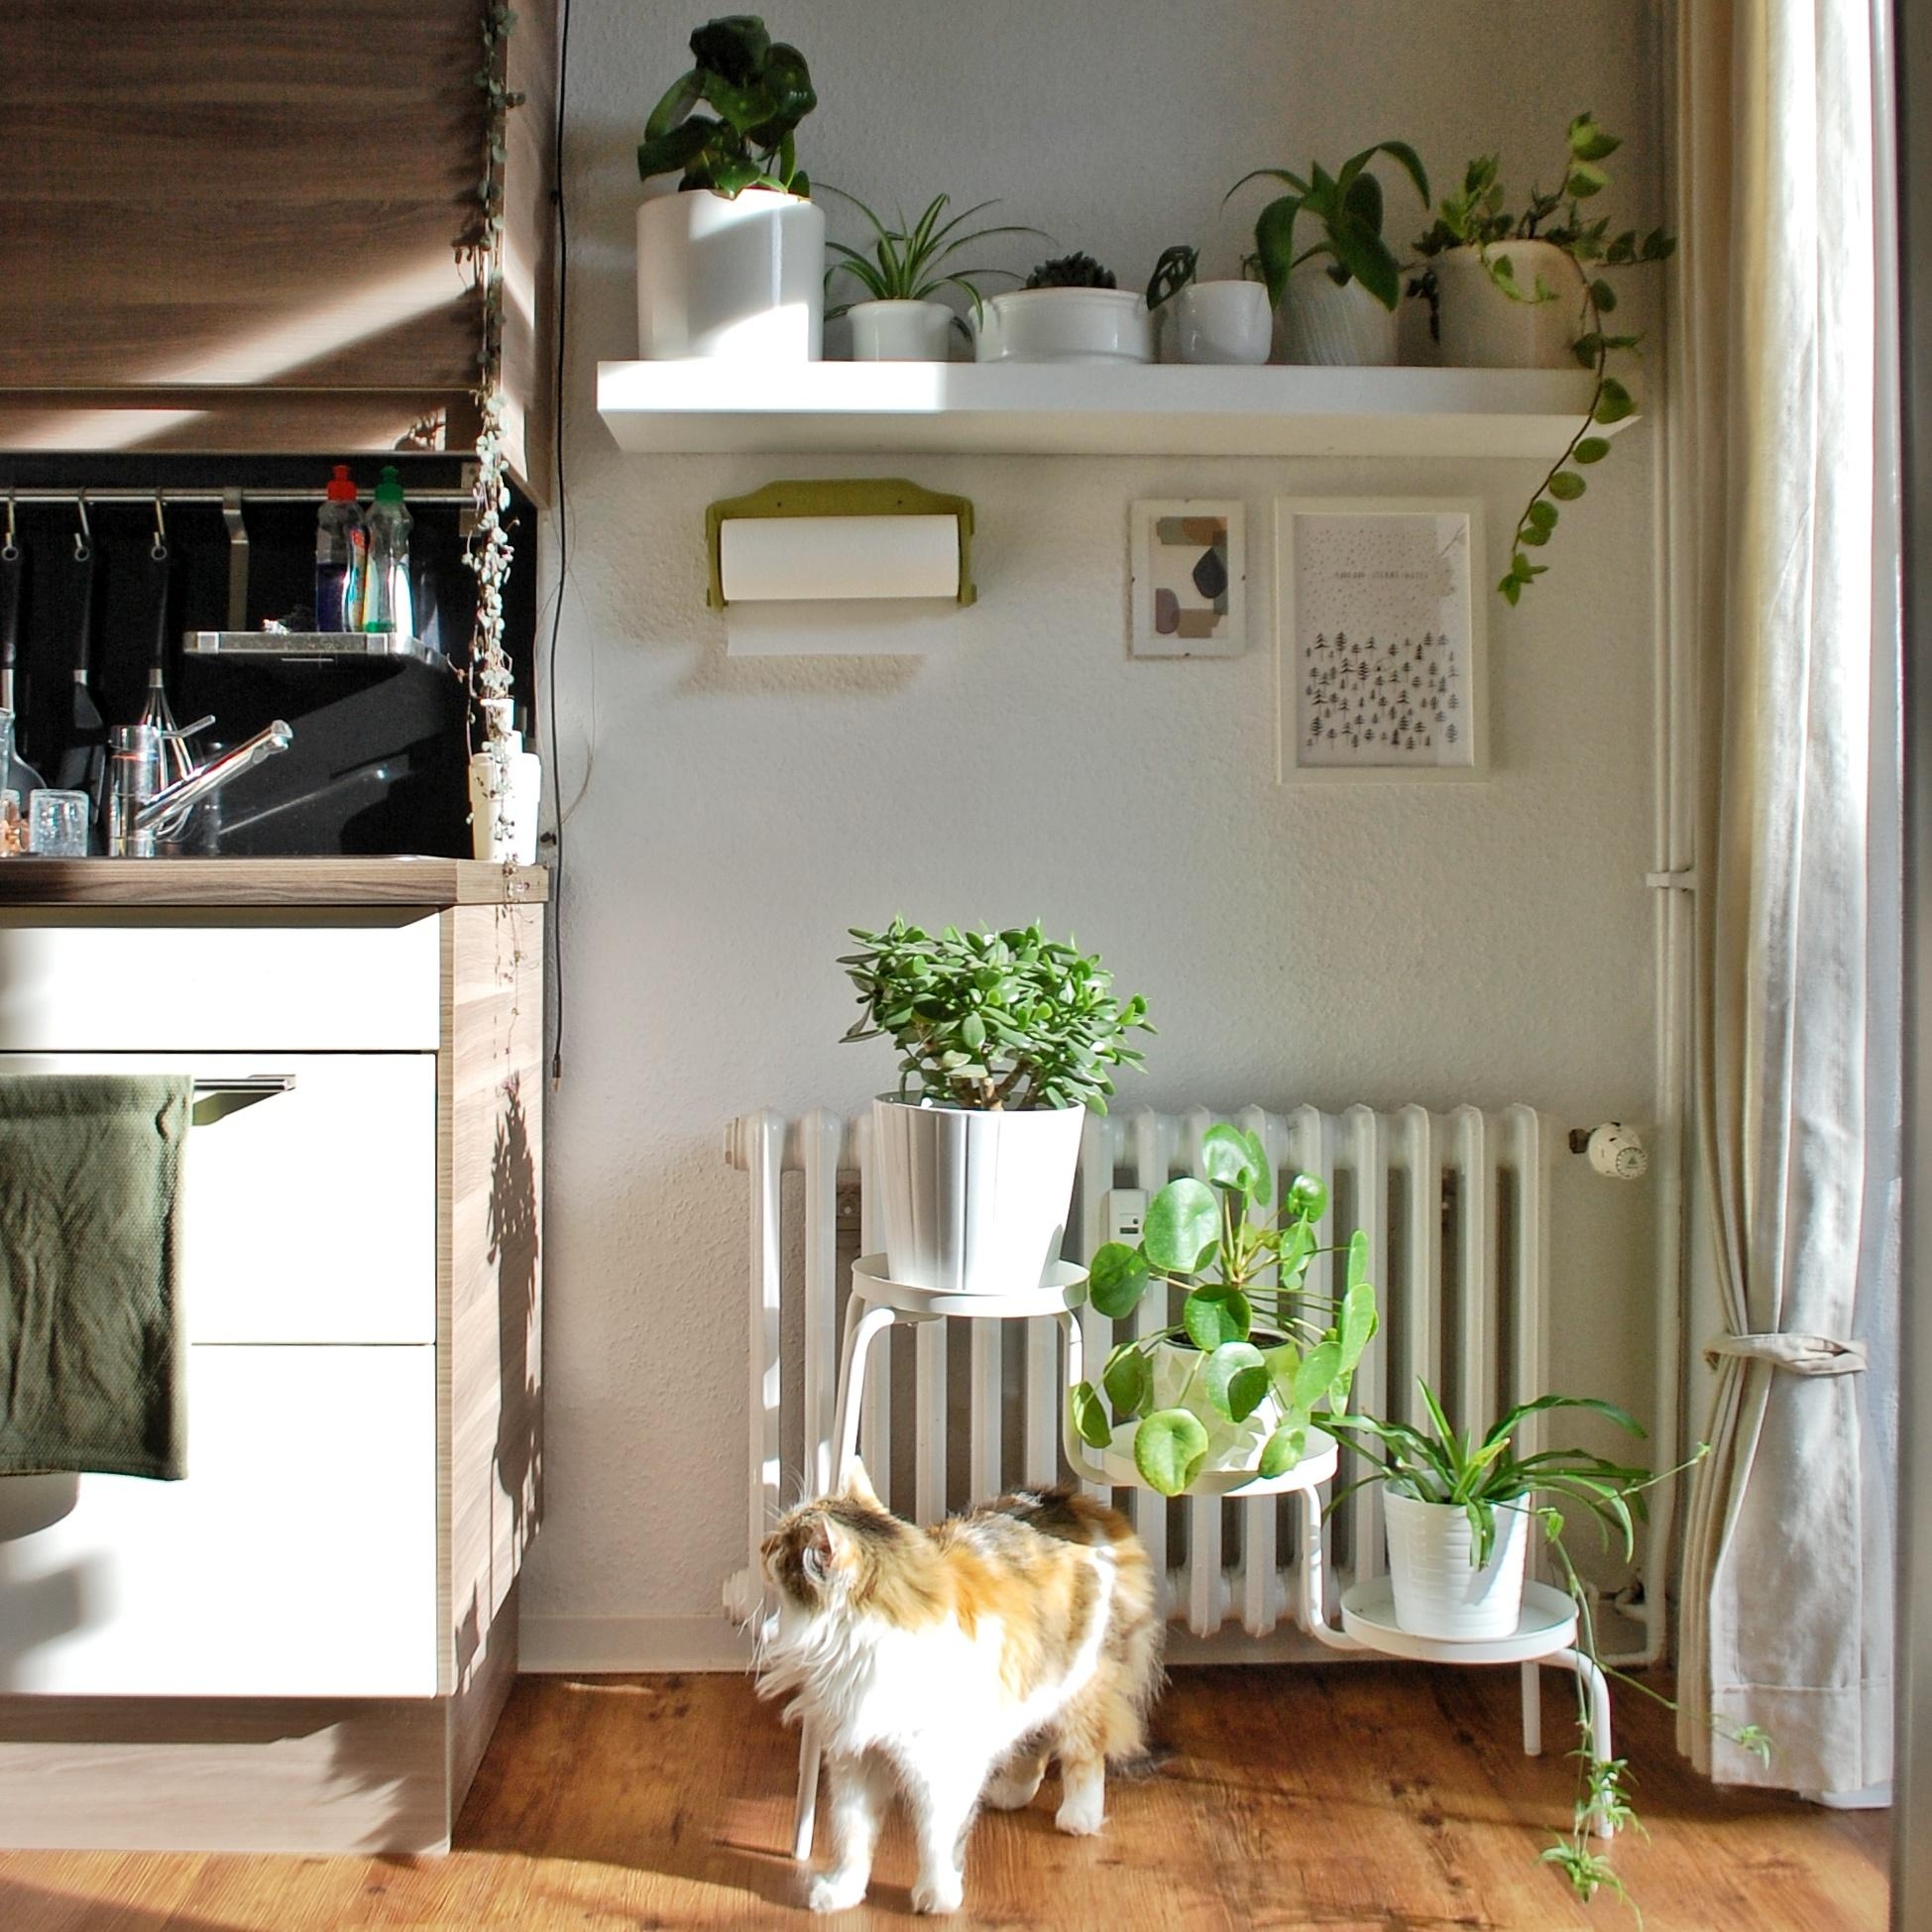 Pflanzen in der Küche sind genau der richtige Farbtupfer! #scandistyle #couchstyle 
#kitchenspot #plantgang